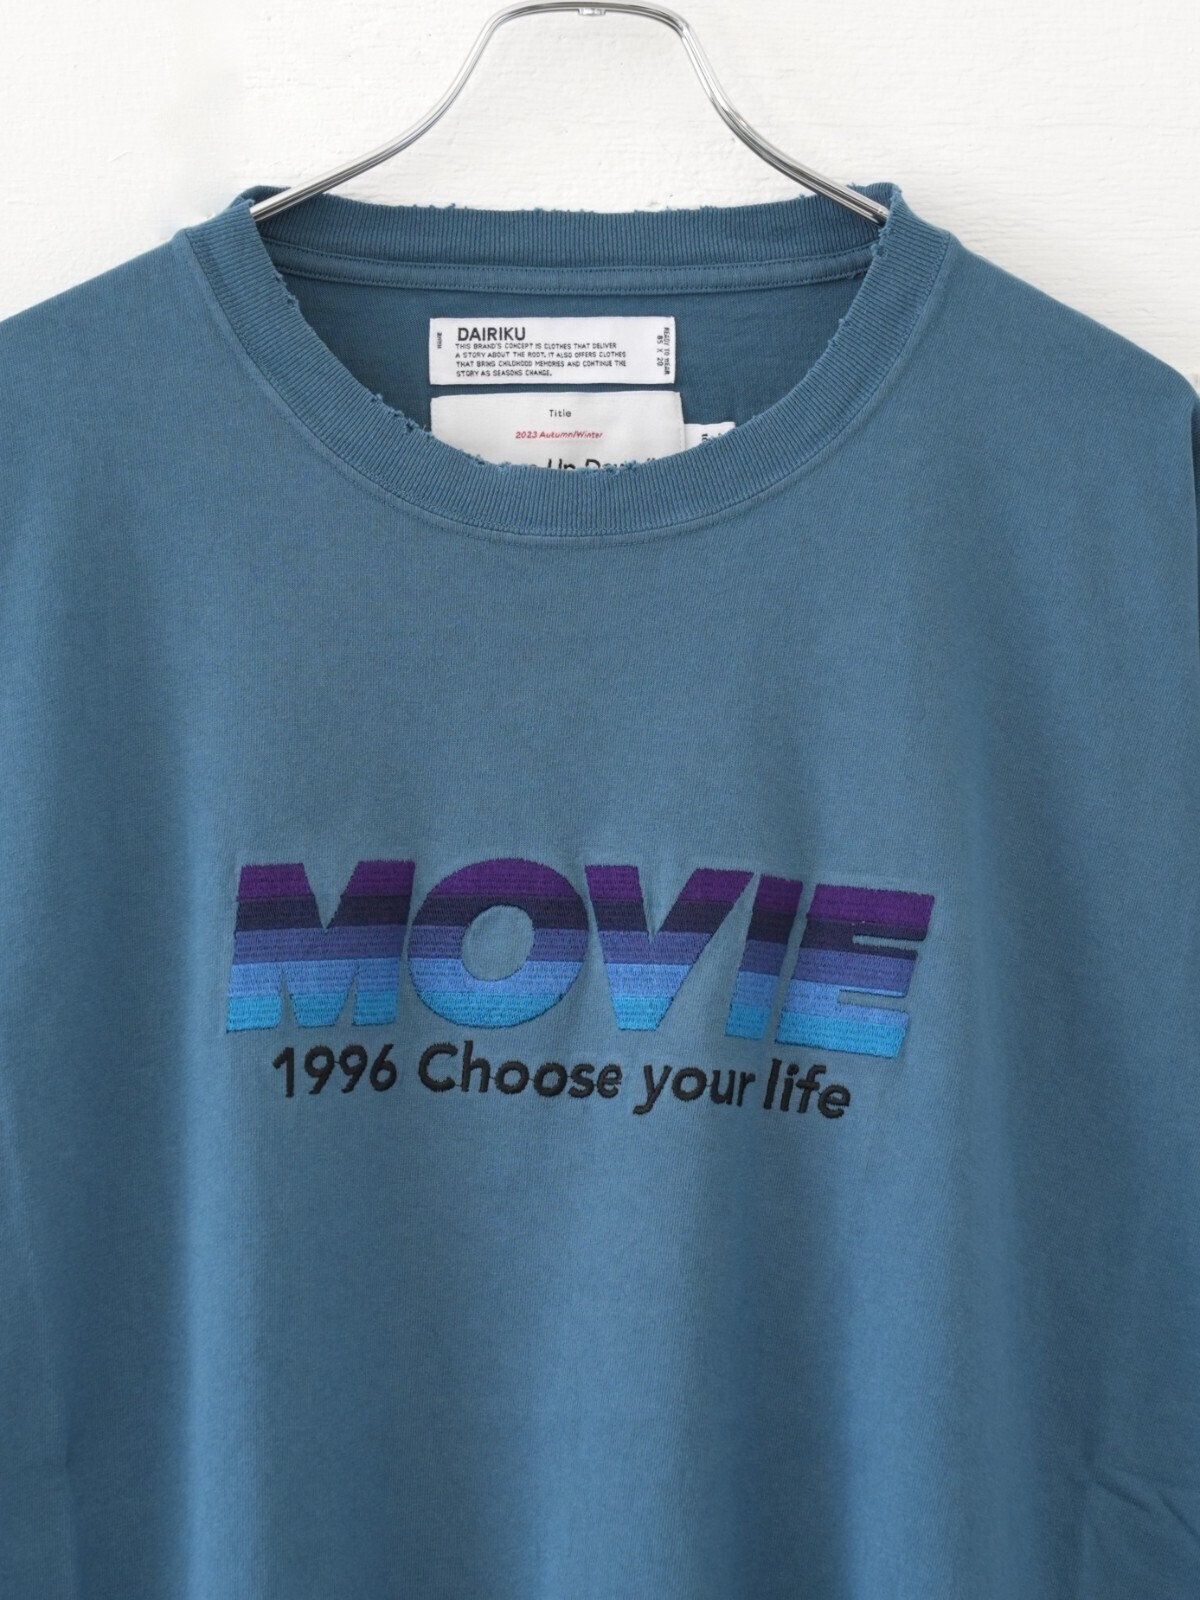 MOVIE” ロングTシャツ   ダイリク｜公式通販サイト   リロープ